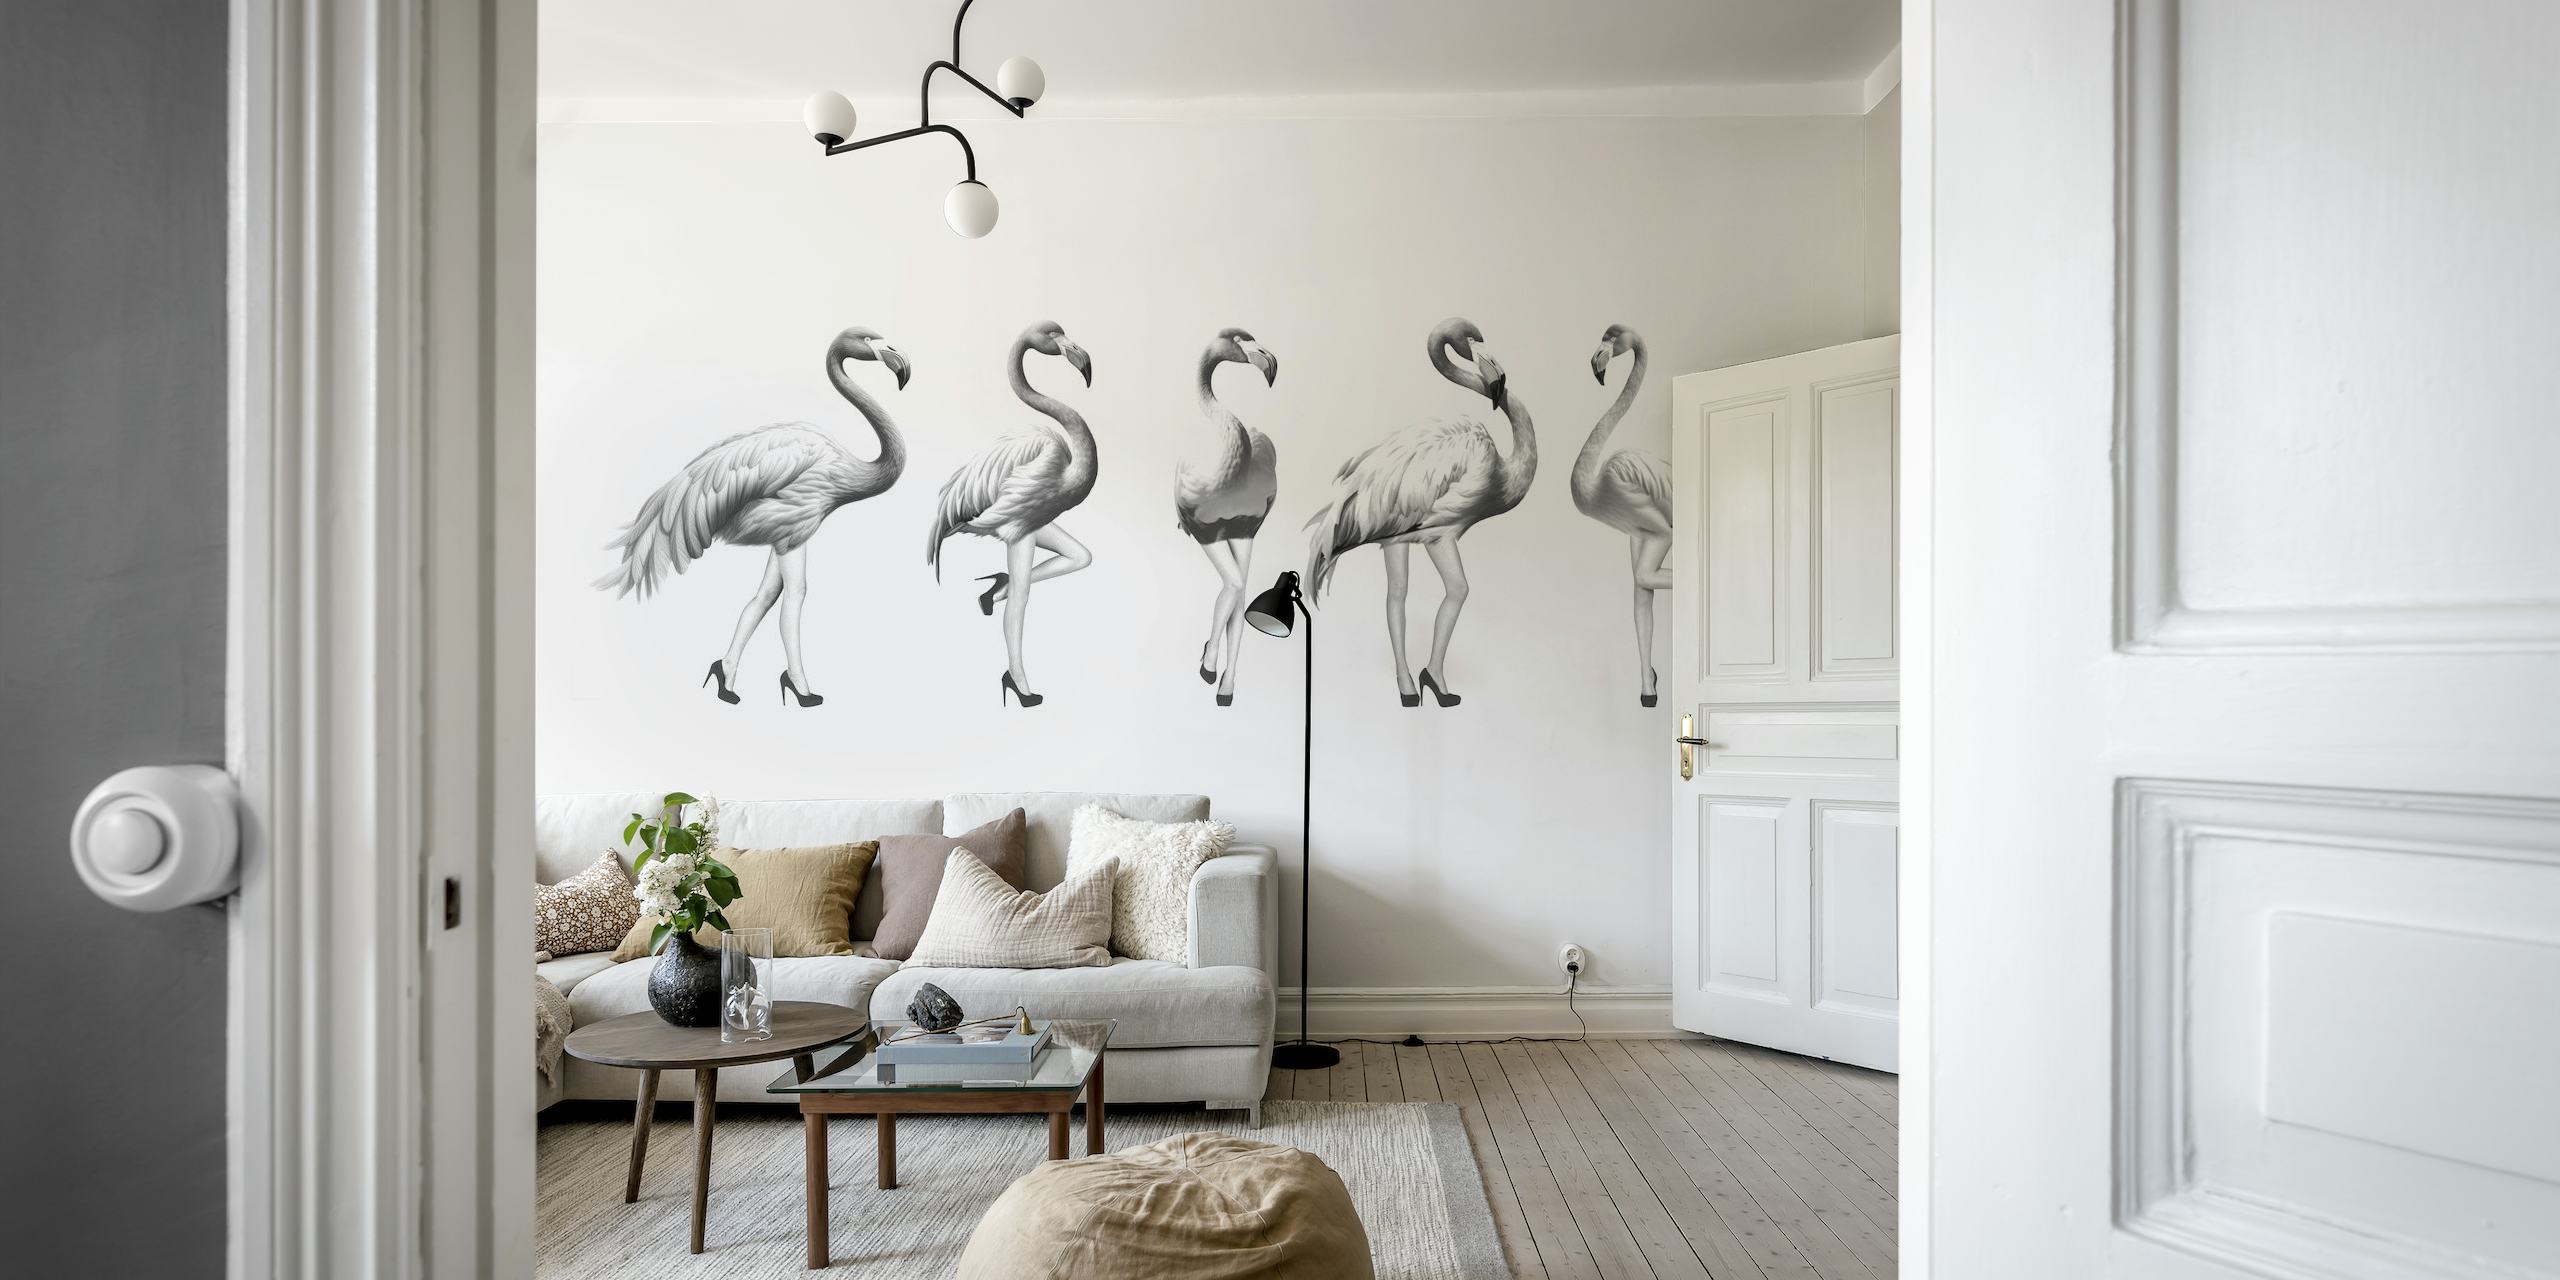 Czarno-biała fototapeta przedstawiająca zabawne flamingi w odcieniach szarości